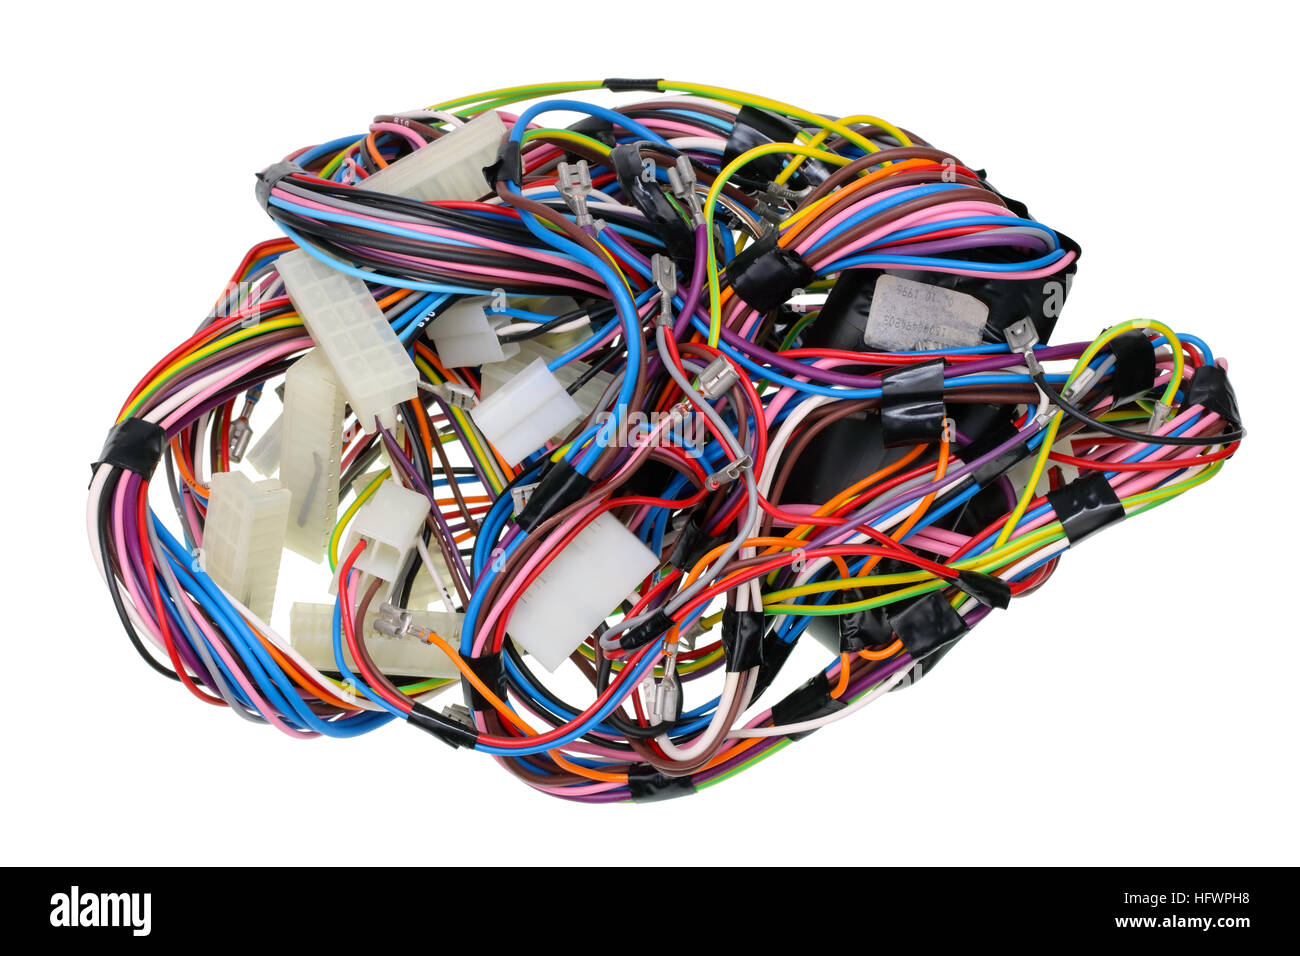 Chaos de fils d'alimentation de couleur câbles et connecteurs femelles à partir de périphériques industriels. Isolated on white Banque D'Images